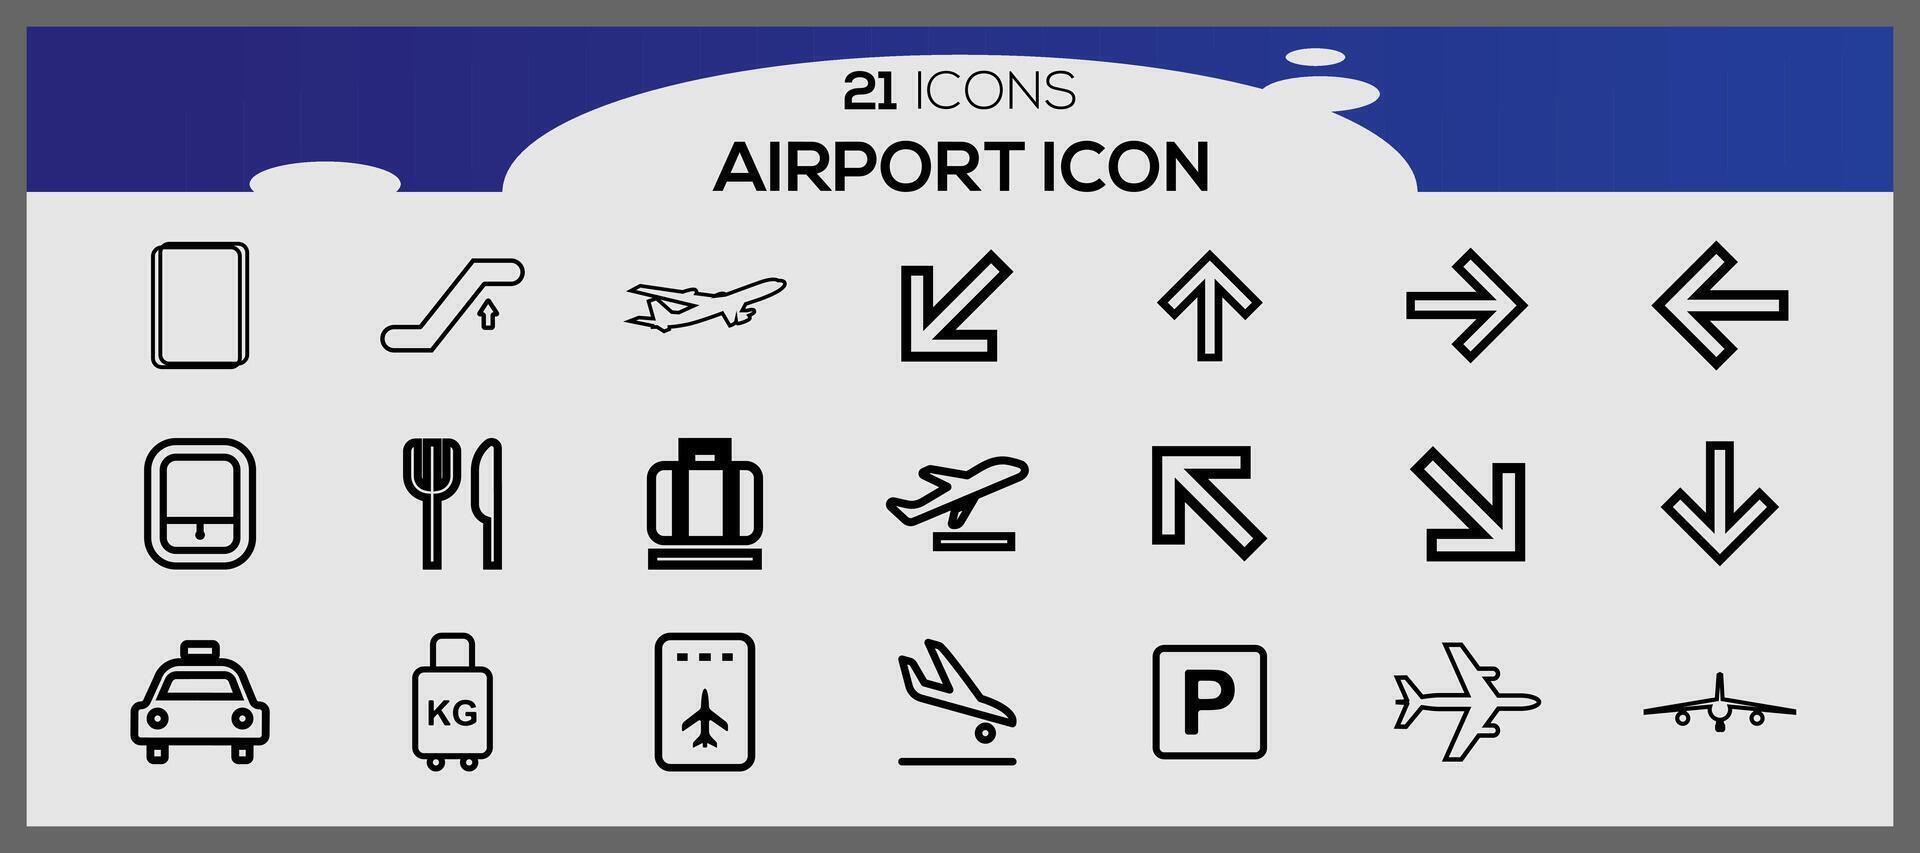 aeroporto icone collezione. viaggio vettore icone per utente interfaccia design. aeroporto icona impostare.